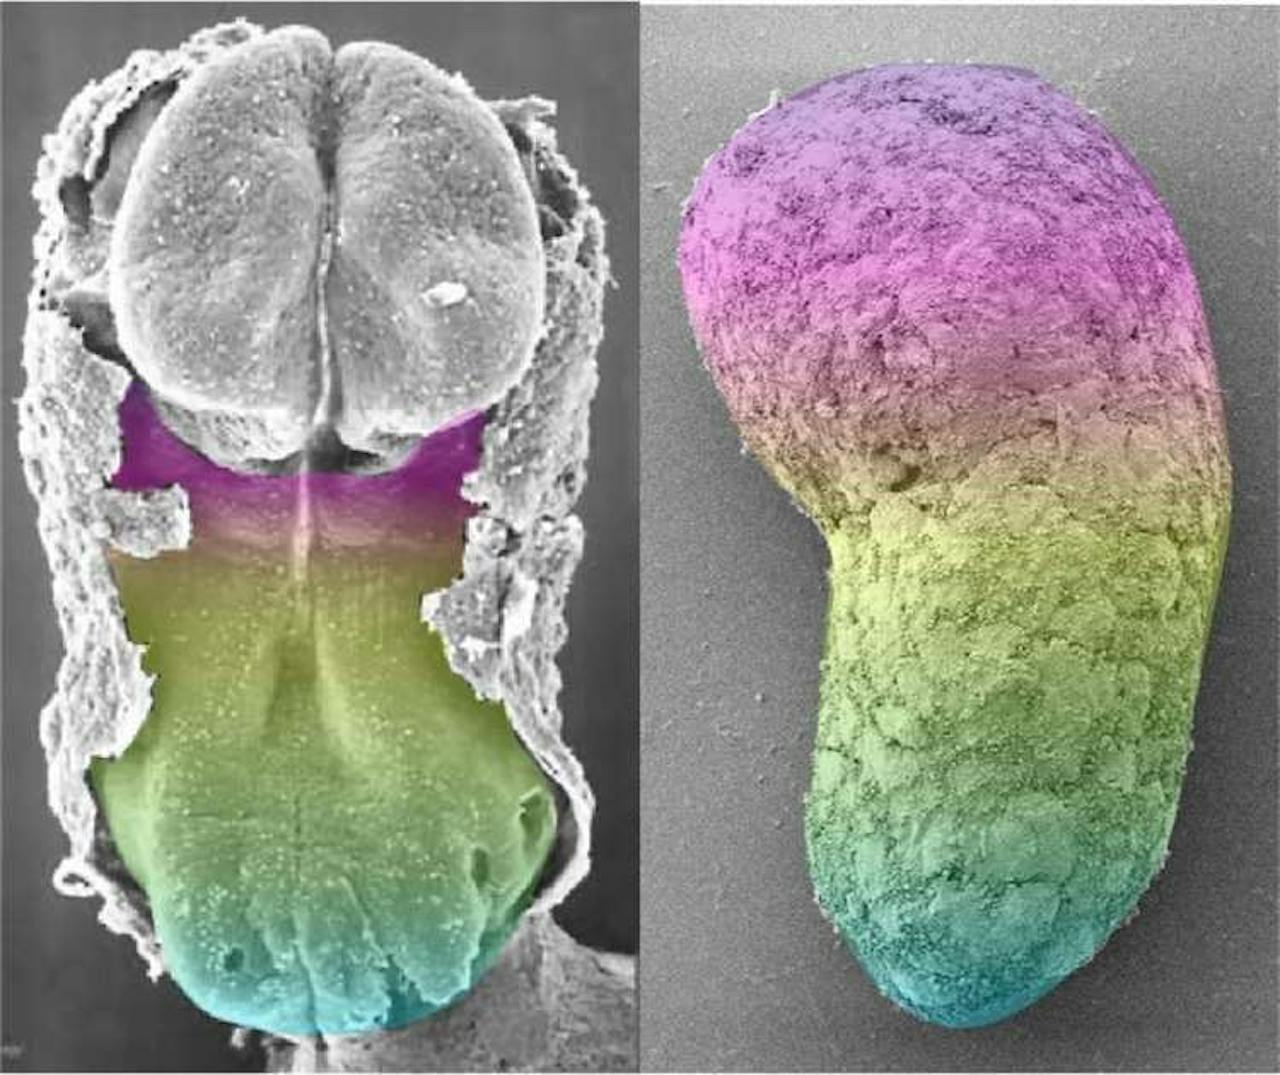 Links een 20 dagen oud menselijk embryo. Rechts een model van een embryo dat door wetenschappers is gemaakt.